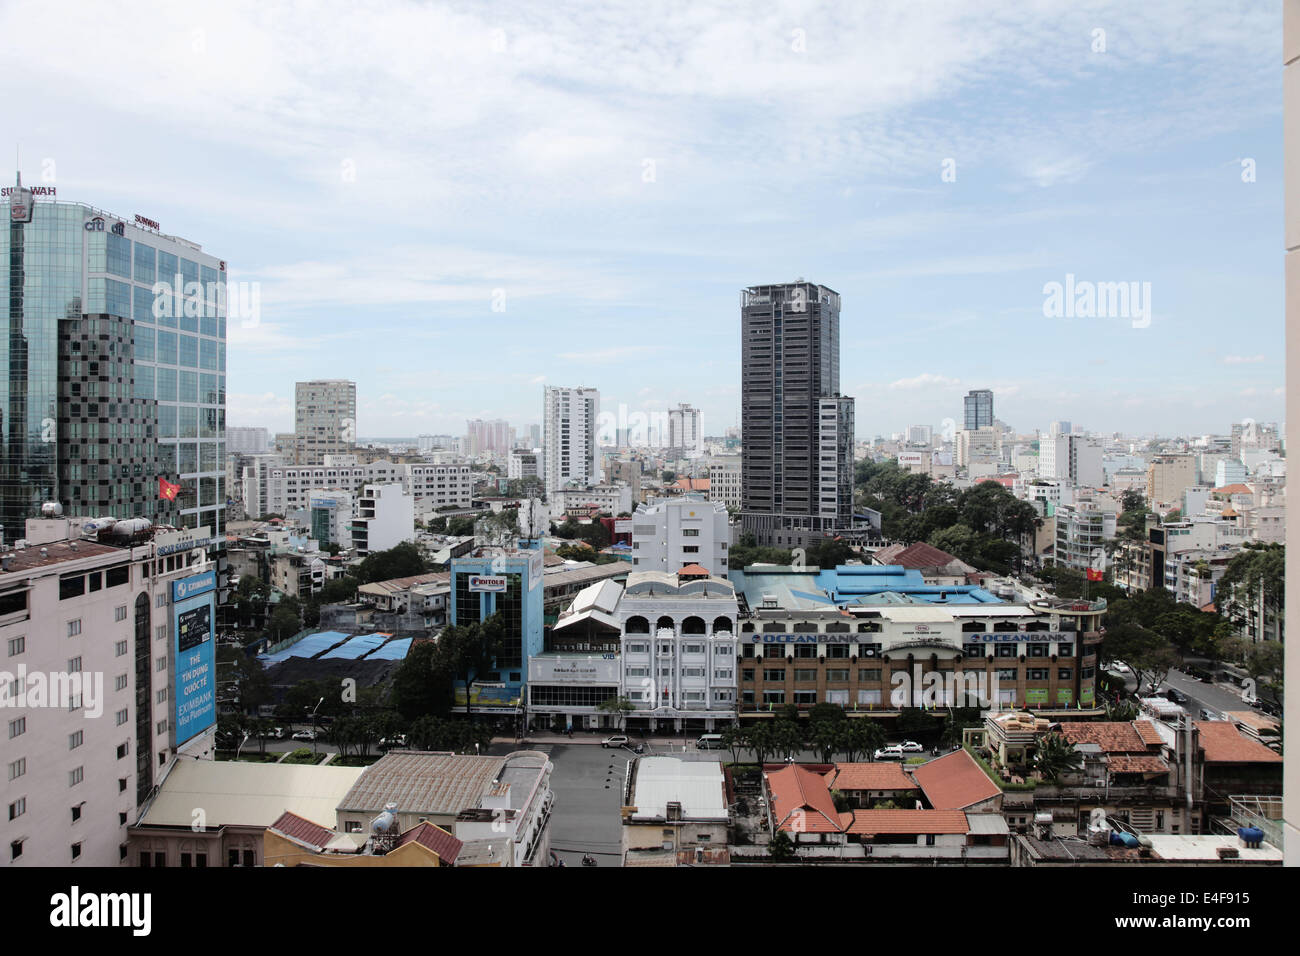 Es ist ein Foto von einer Skyline-Blick von Ho-Chi-Min-Stadt in Vietnam. Wir sehen eine große Ansicht des Schlauches, Türme und Gebäude Stockfoto